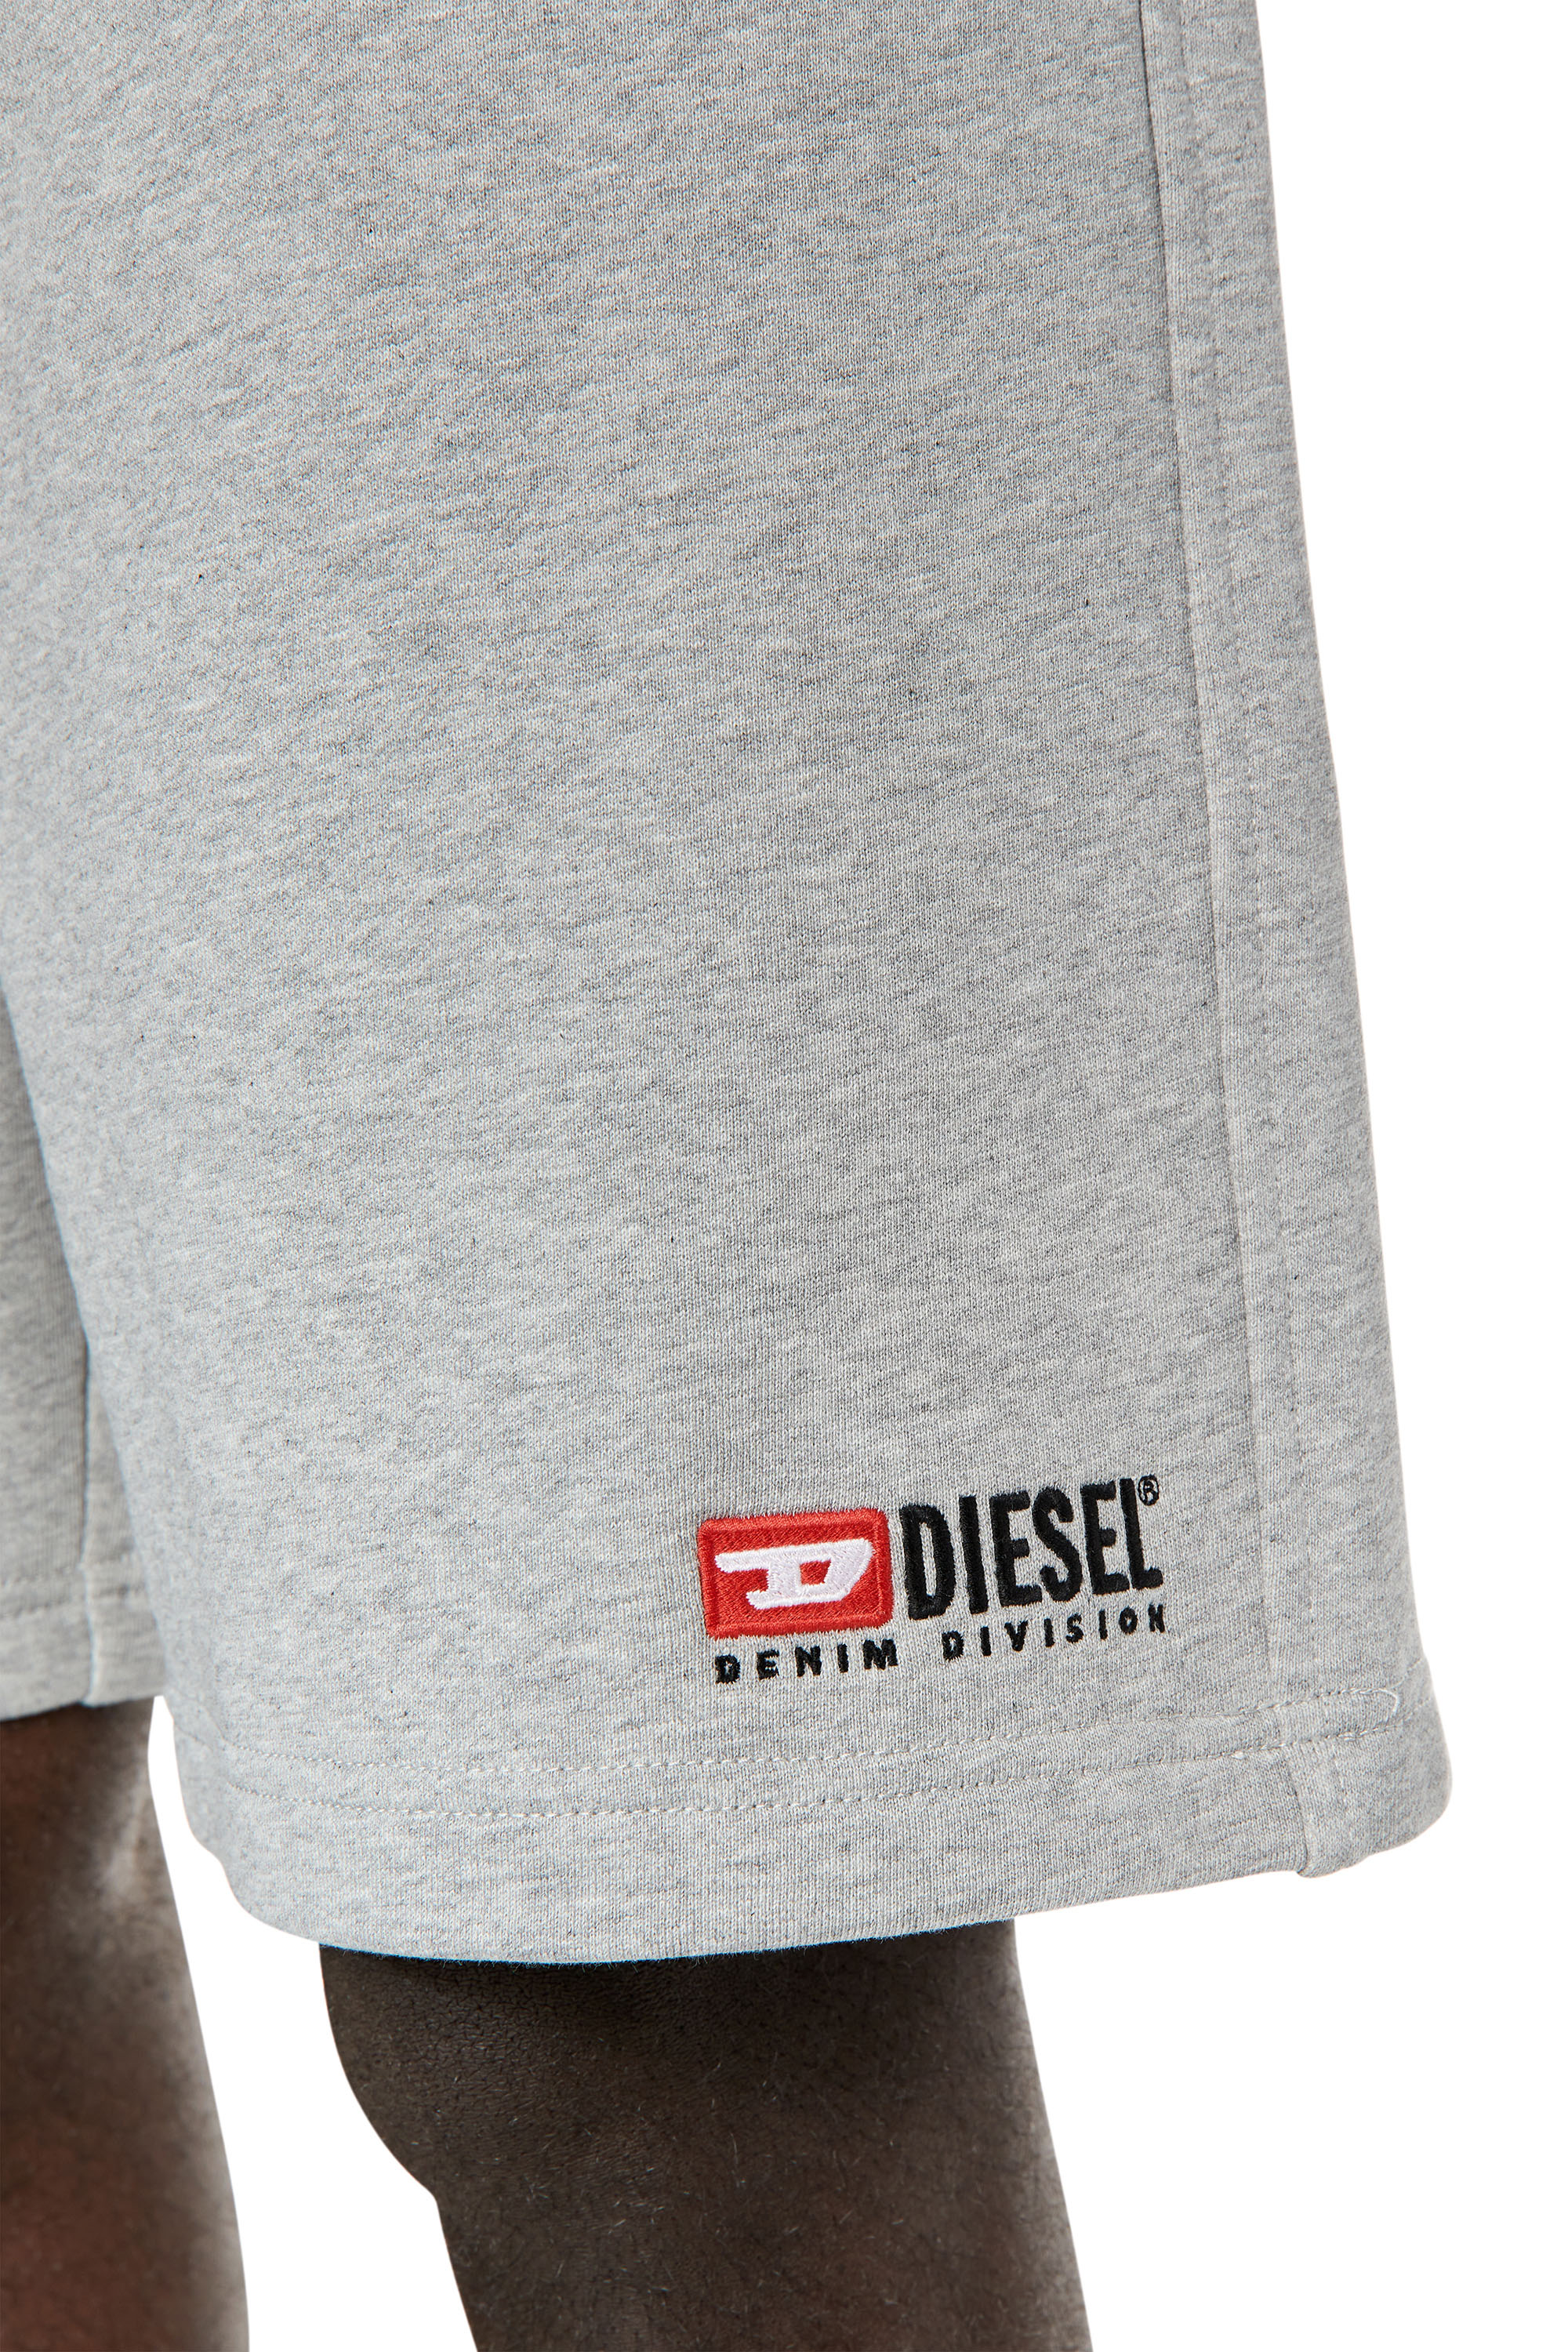 Diesel - P-CROWN-DIV, Grey - Image 4